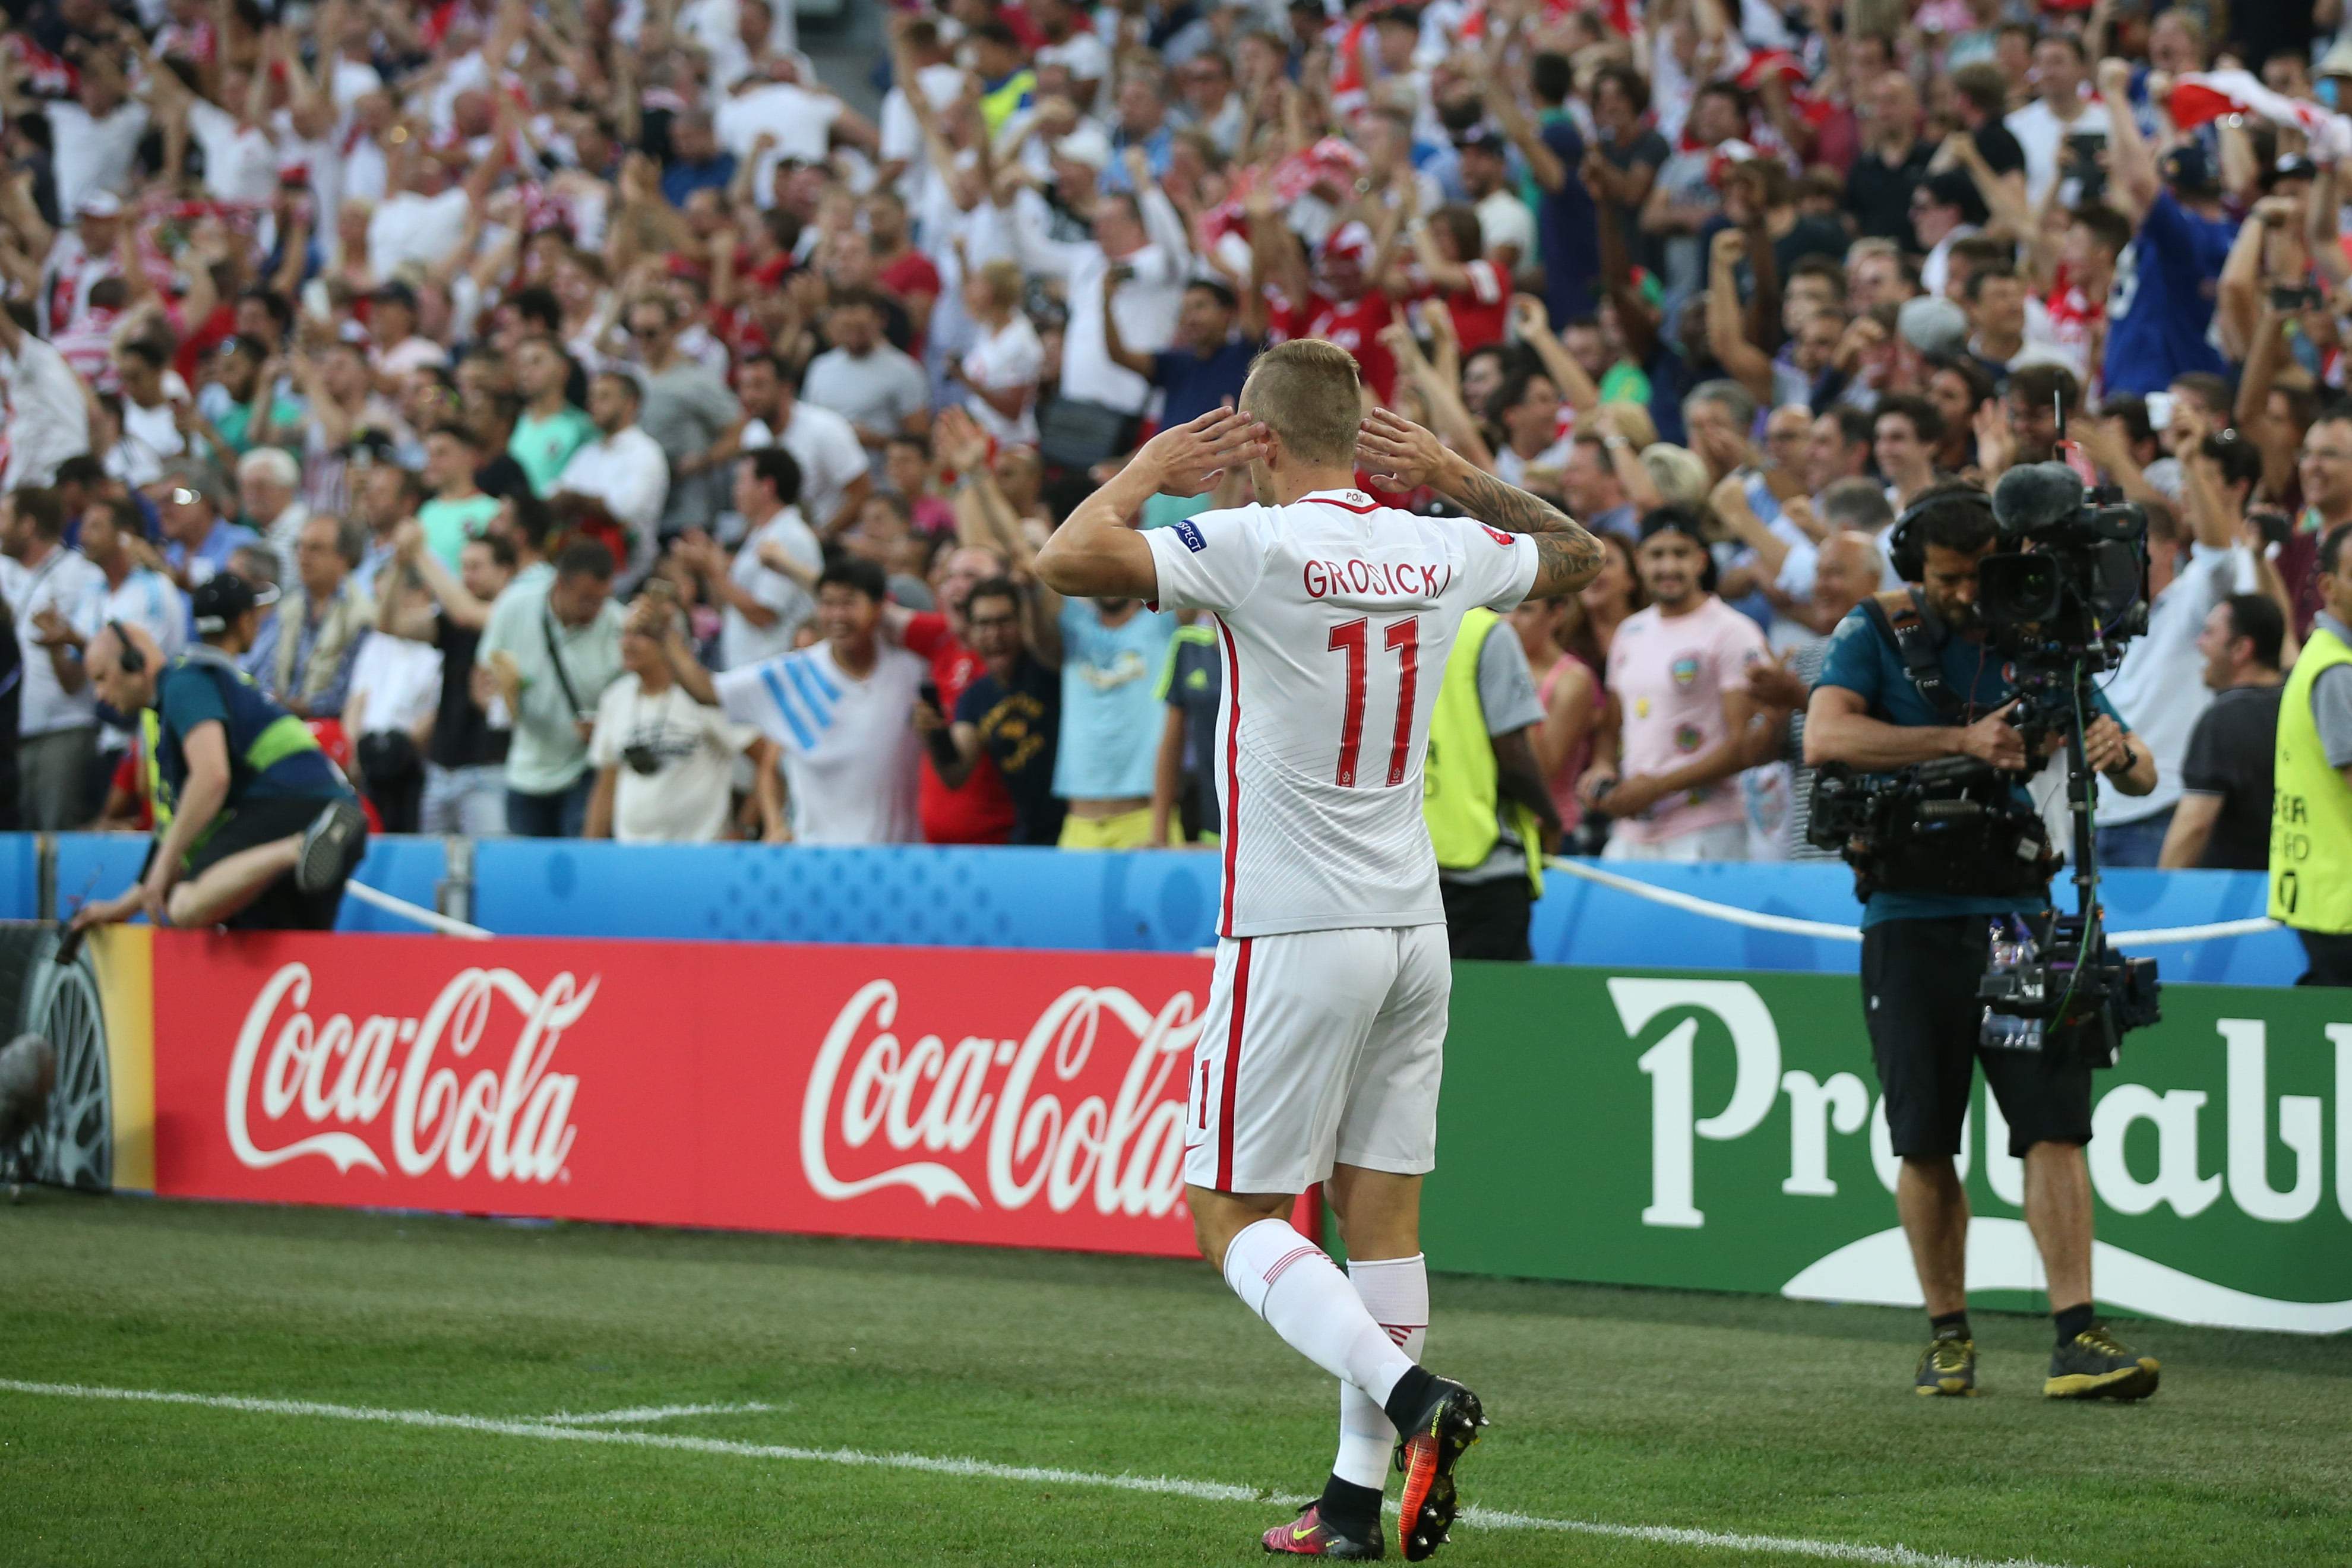 Pilka nozna. Euro 2016. Polska - Portugal. 30.06.2016